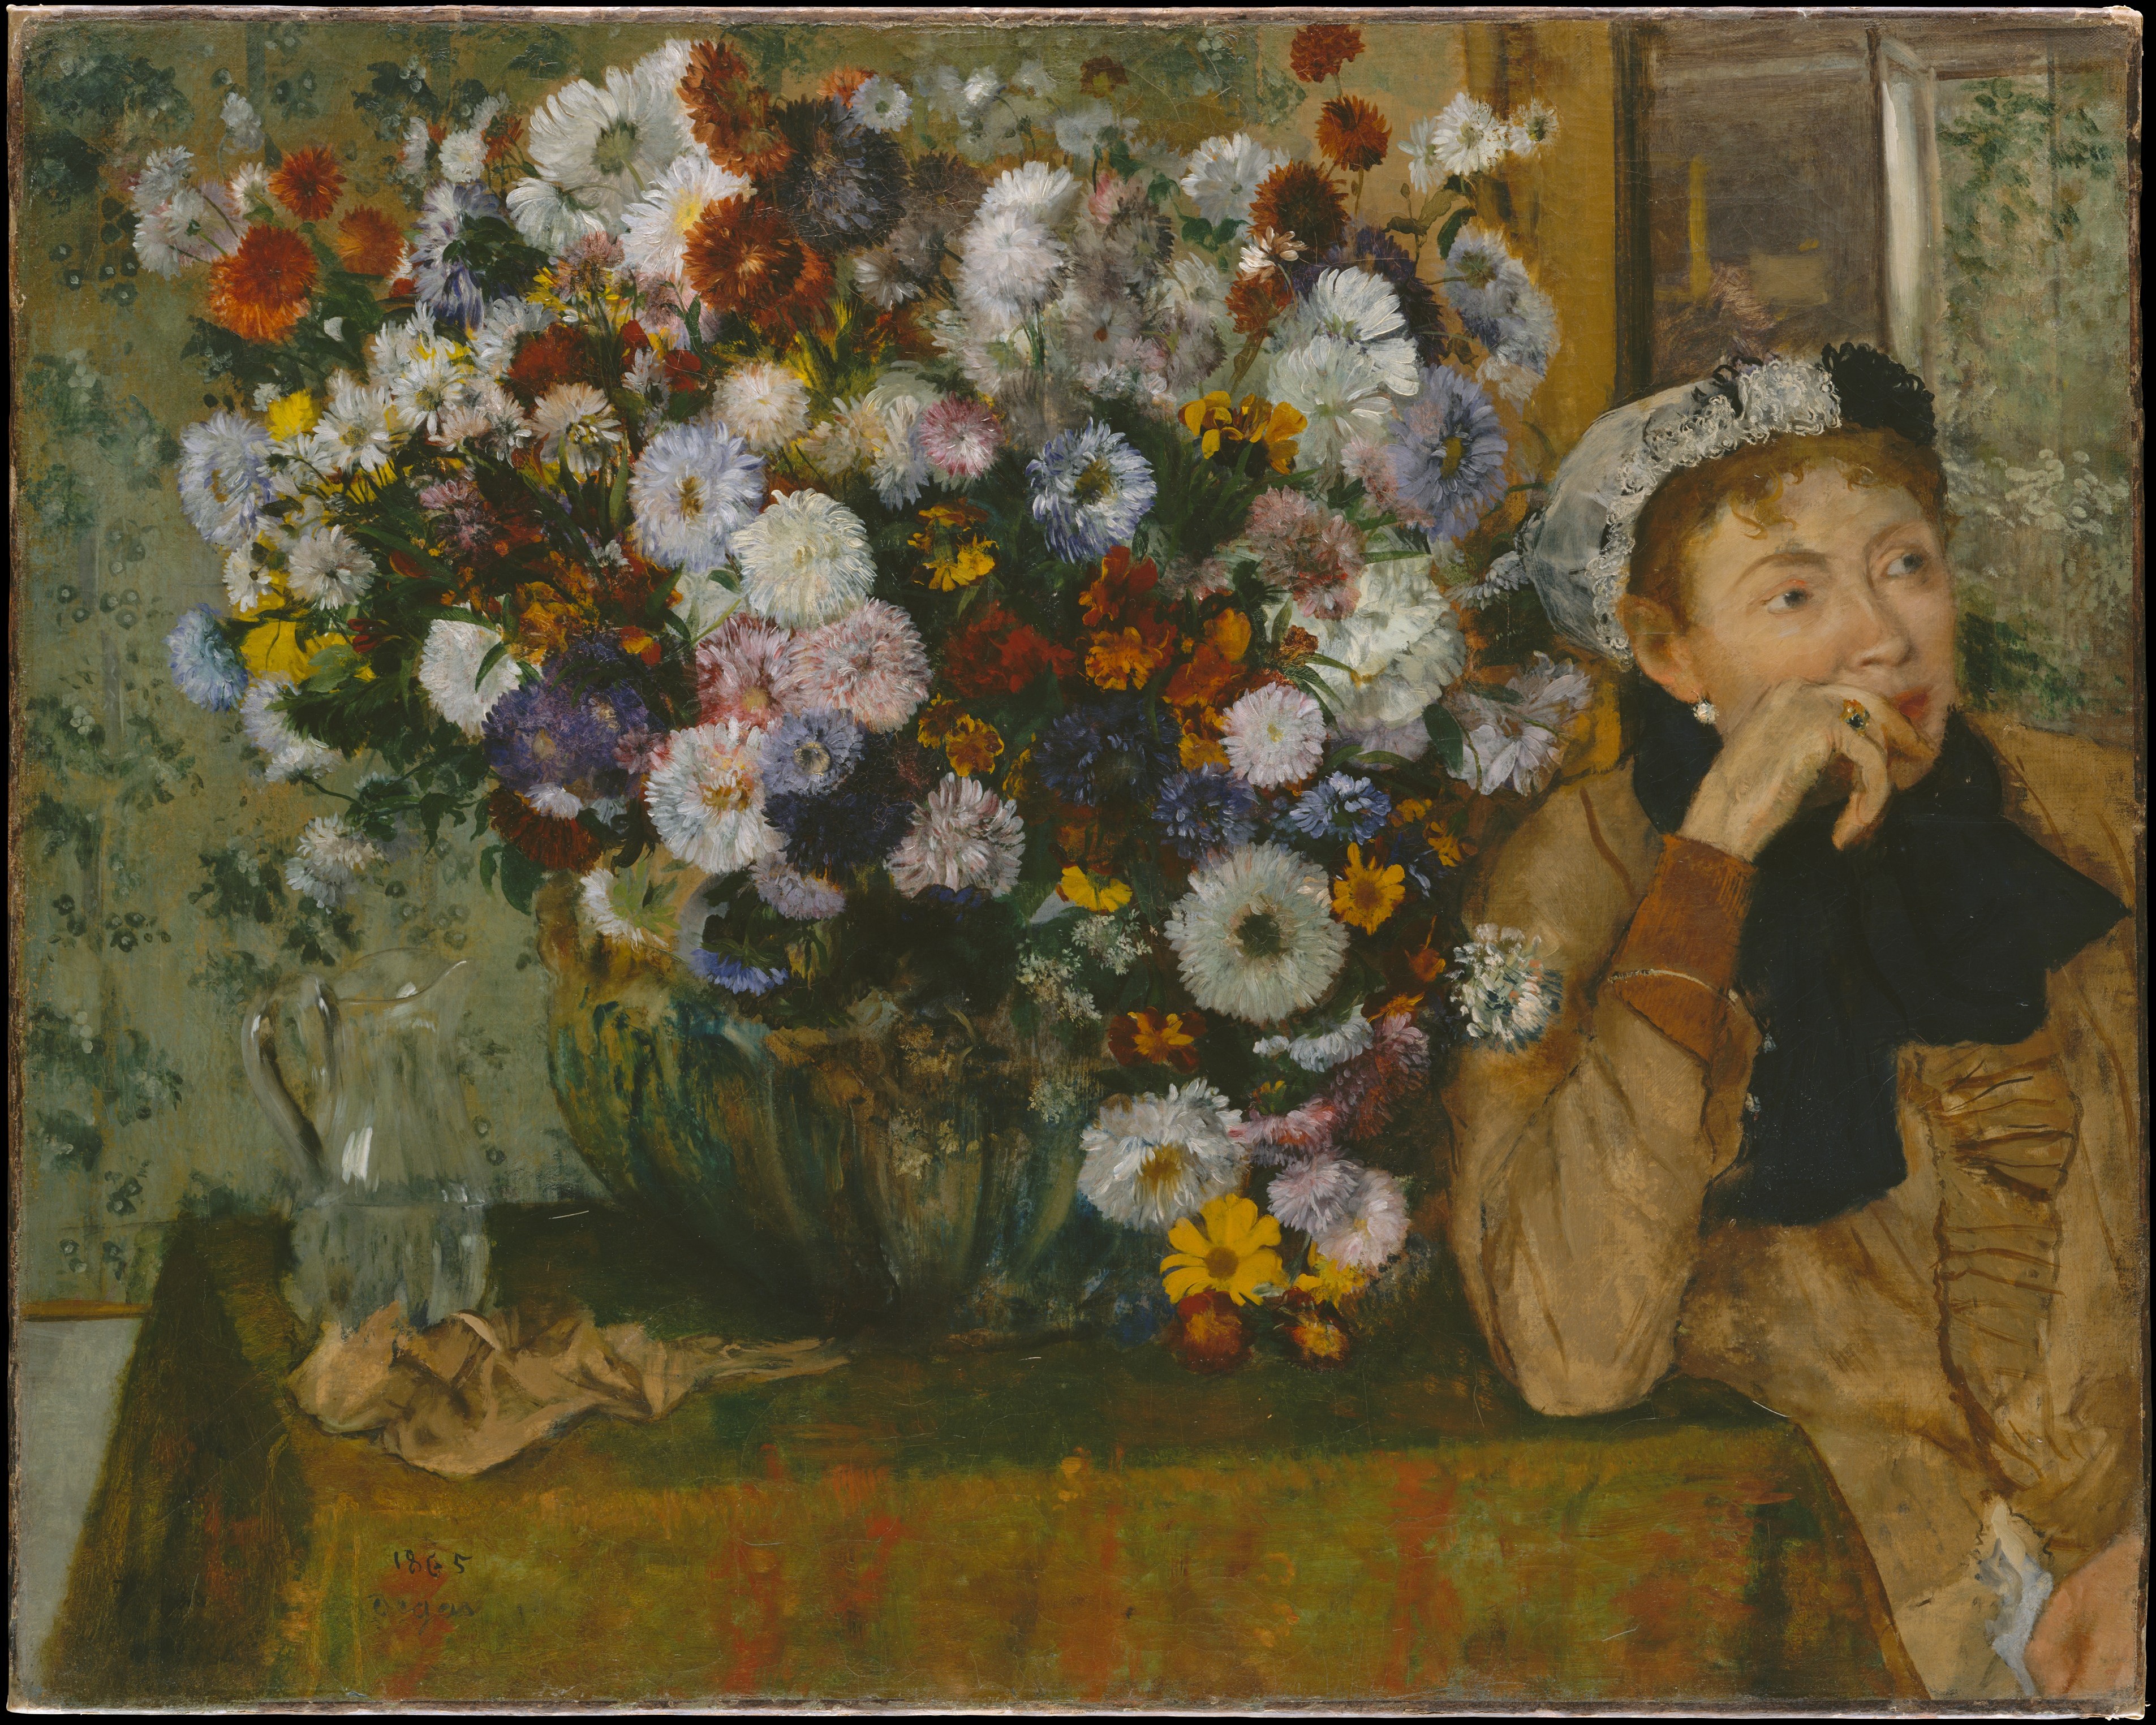 女と菊の花（ヴァルパンソン夫人（？）） by Edgar Degas - 1865年 - 73.7 x 92.7 cm 